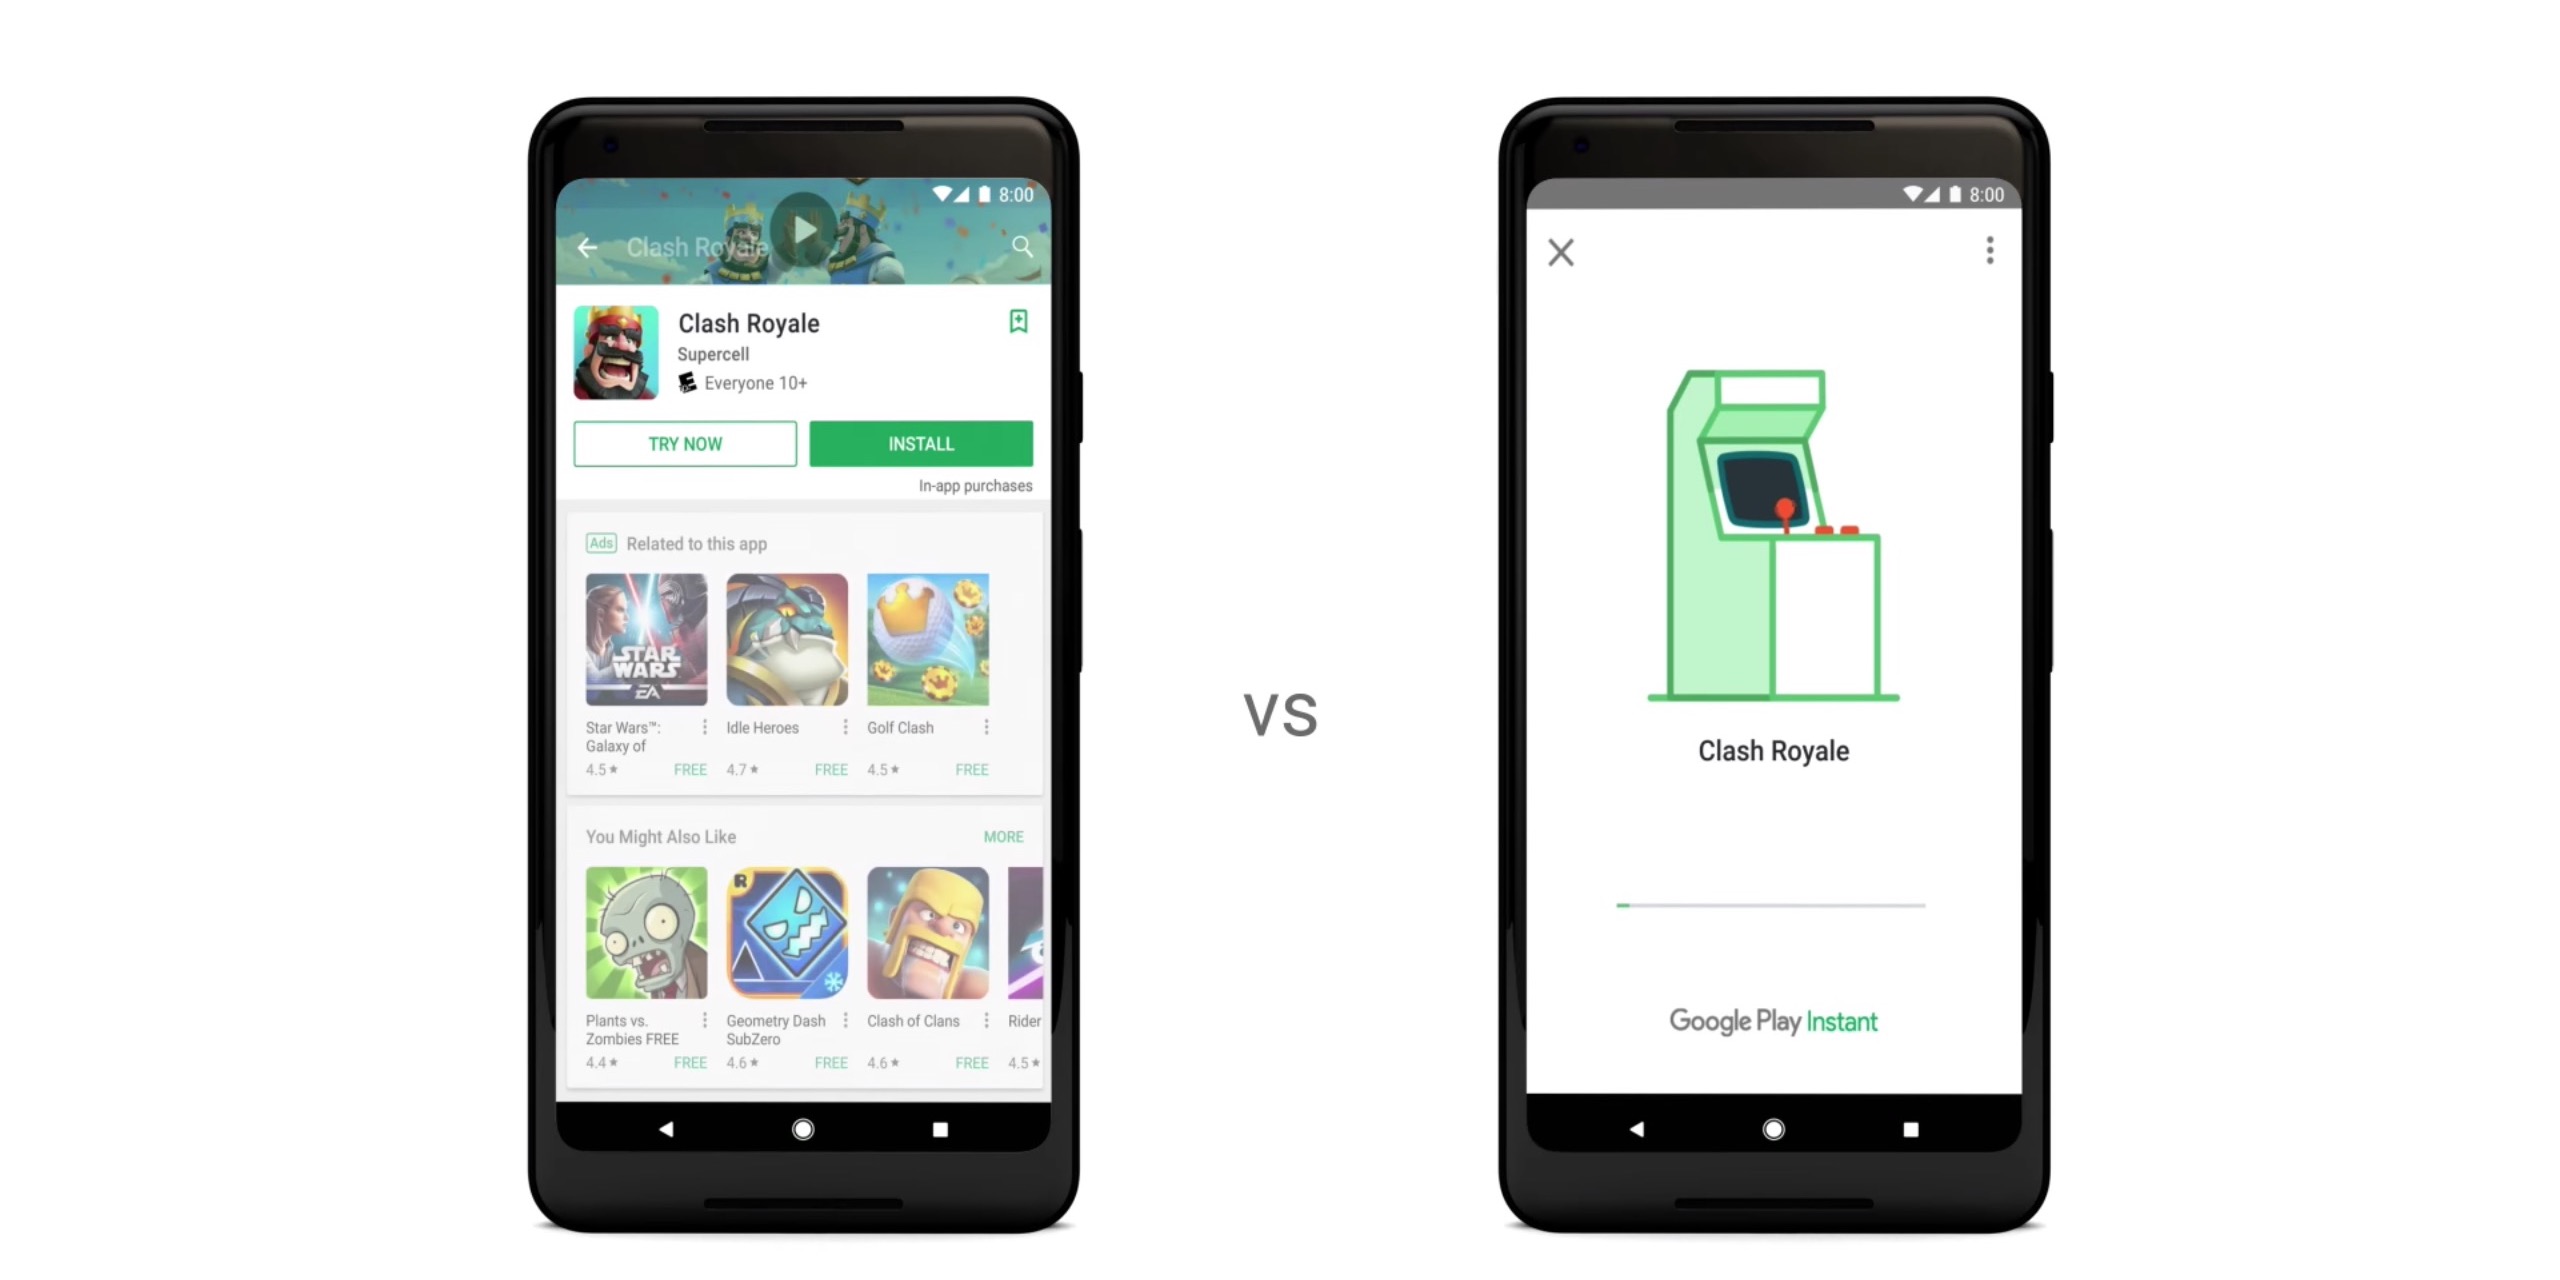 Instant Apps da Google trará anúncios e menos requisitos para apps e jogos  - Canaltech